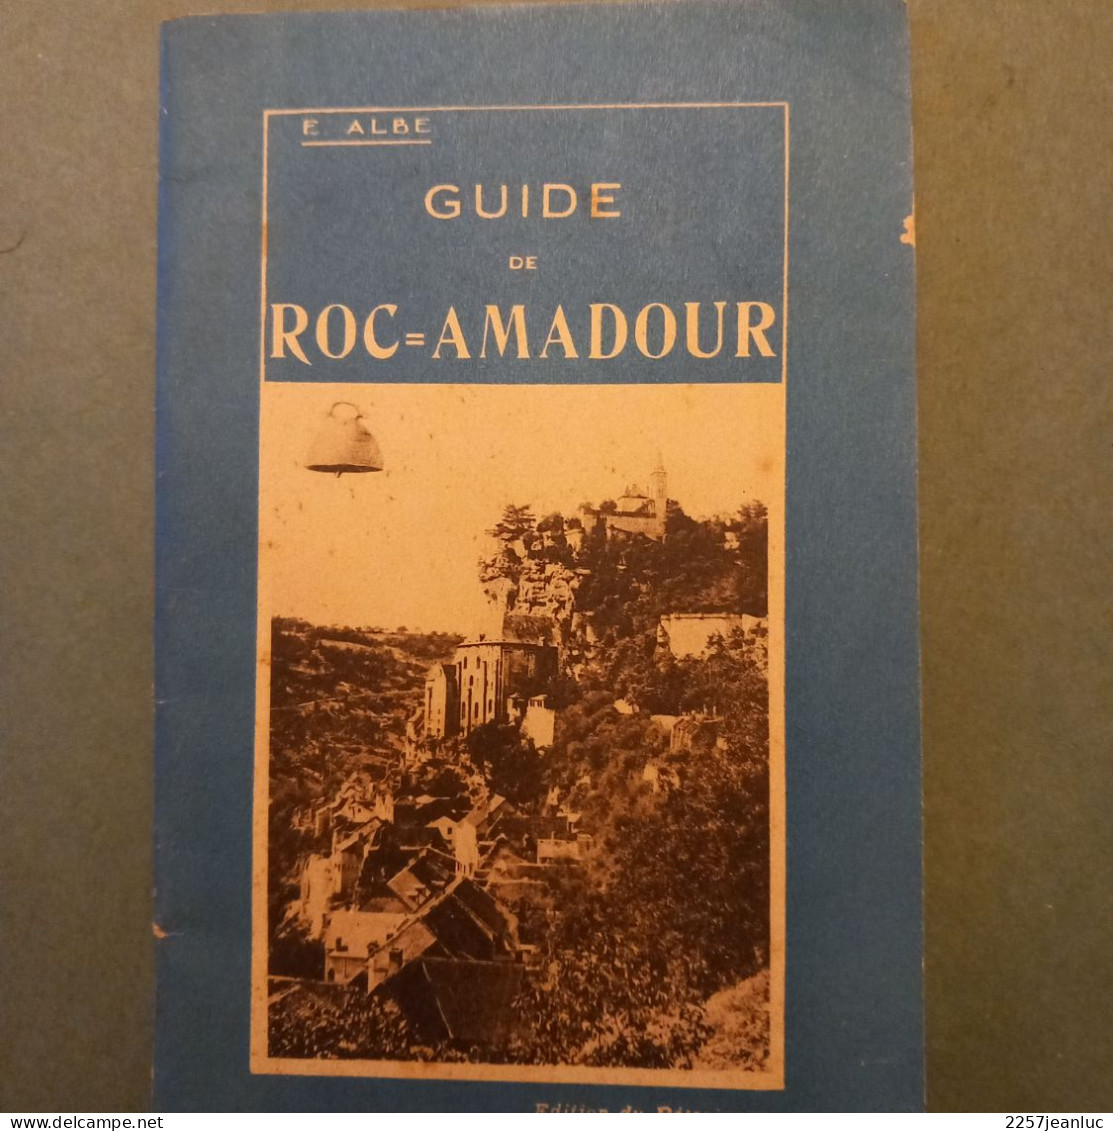 Guide De Roc Amadour E ALBE 1931 De 40 Pages - Michelin-Führer